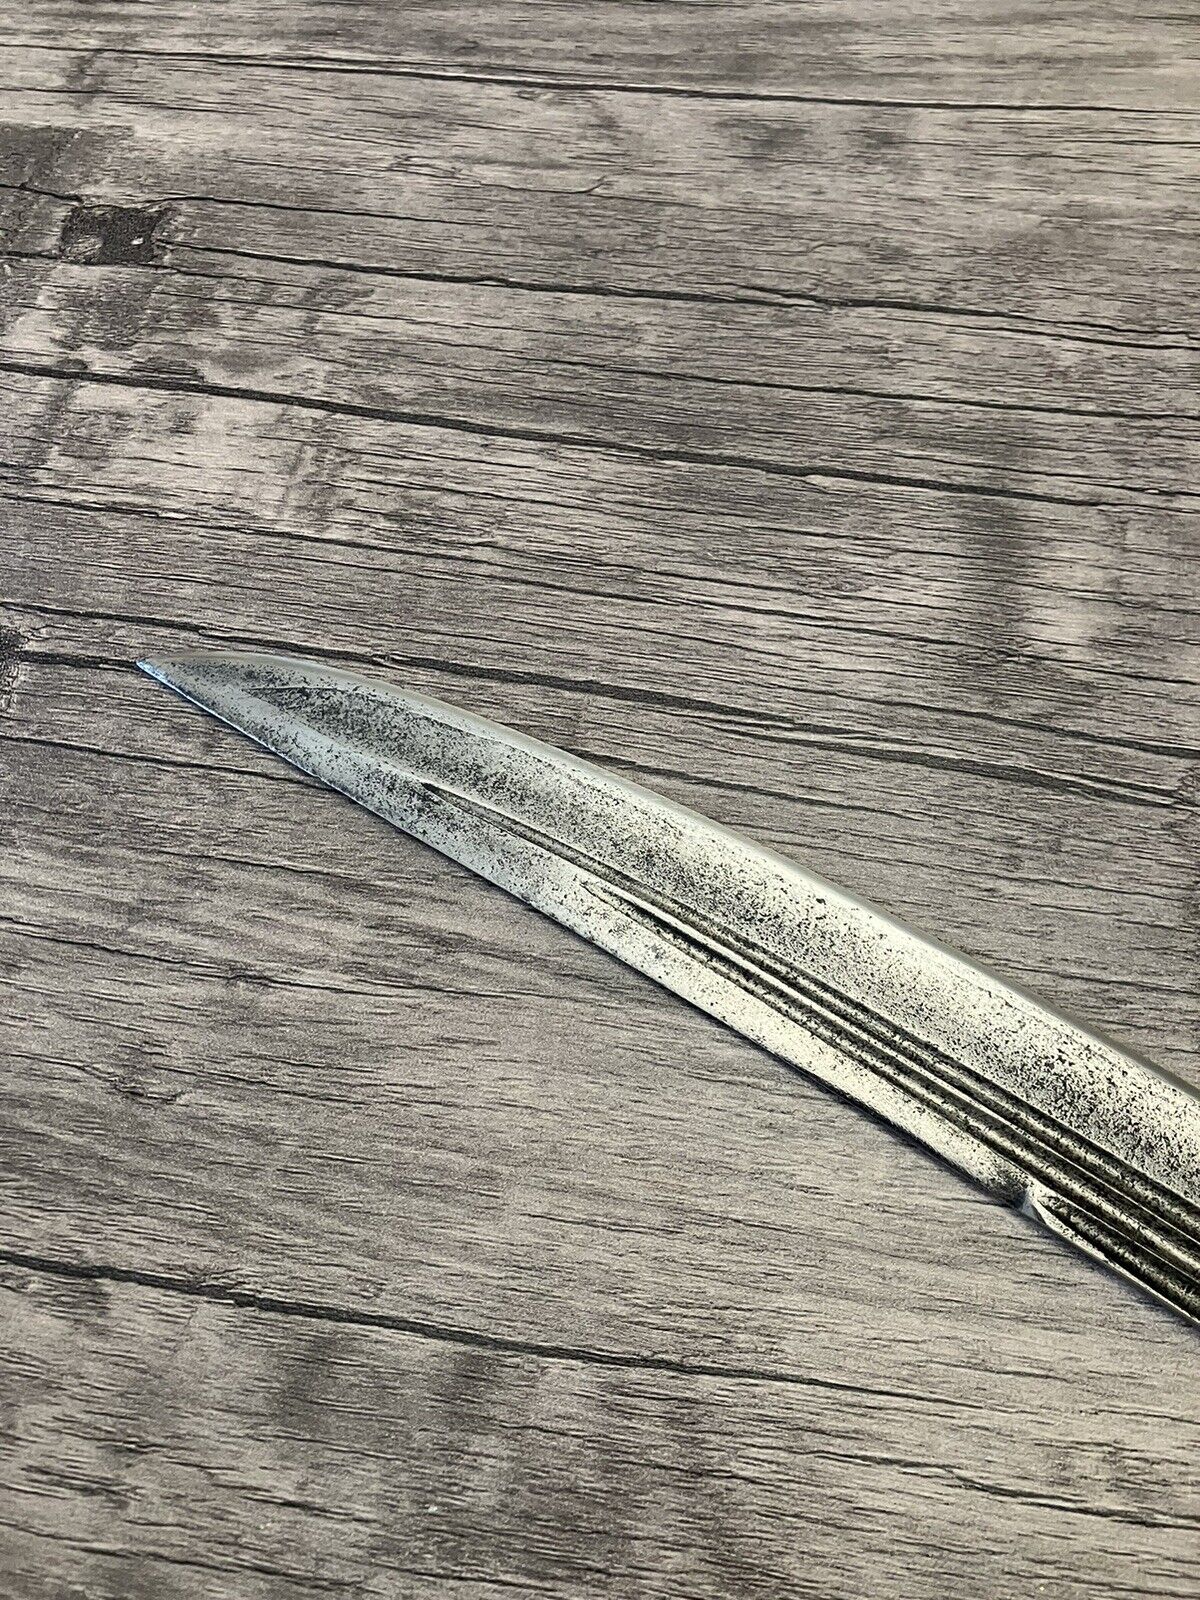 russian sword,dagger,yatagan,kilich,shashka,knife